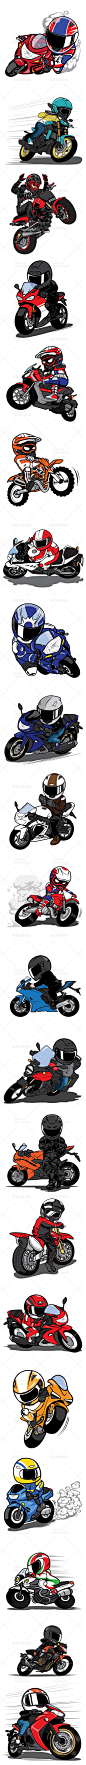 卡通手绘摩托车赛车手机车比赛骑行潮酷装饰插画 AI矢量设计素材-淘宝网